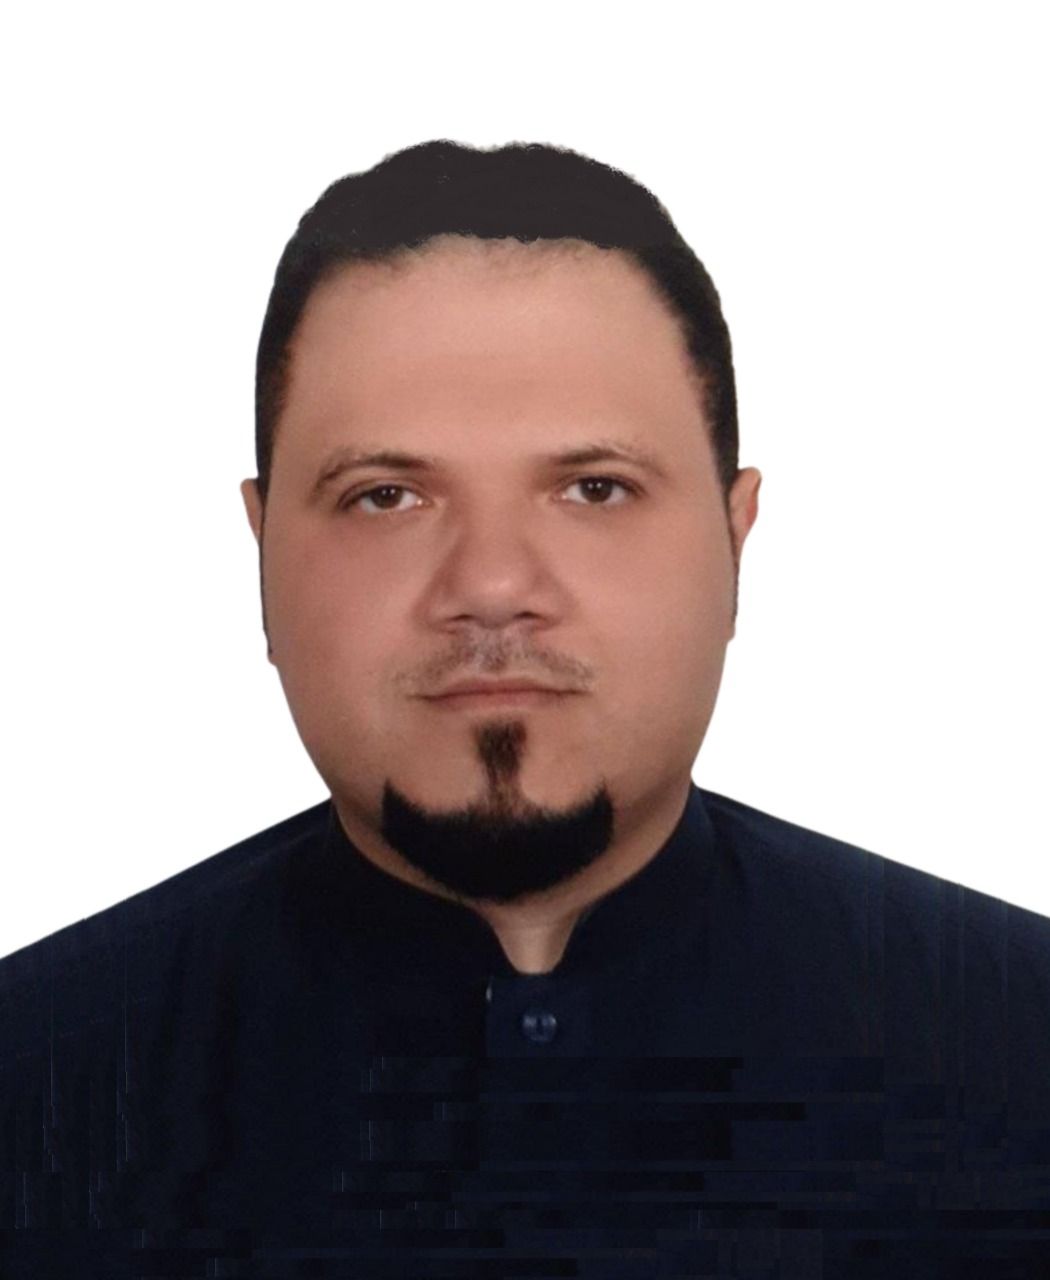 Mr. Abdulkarem Mahmoud Rizk